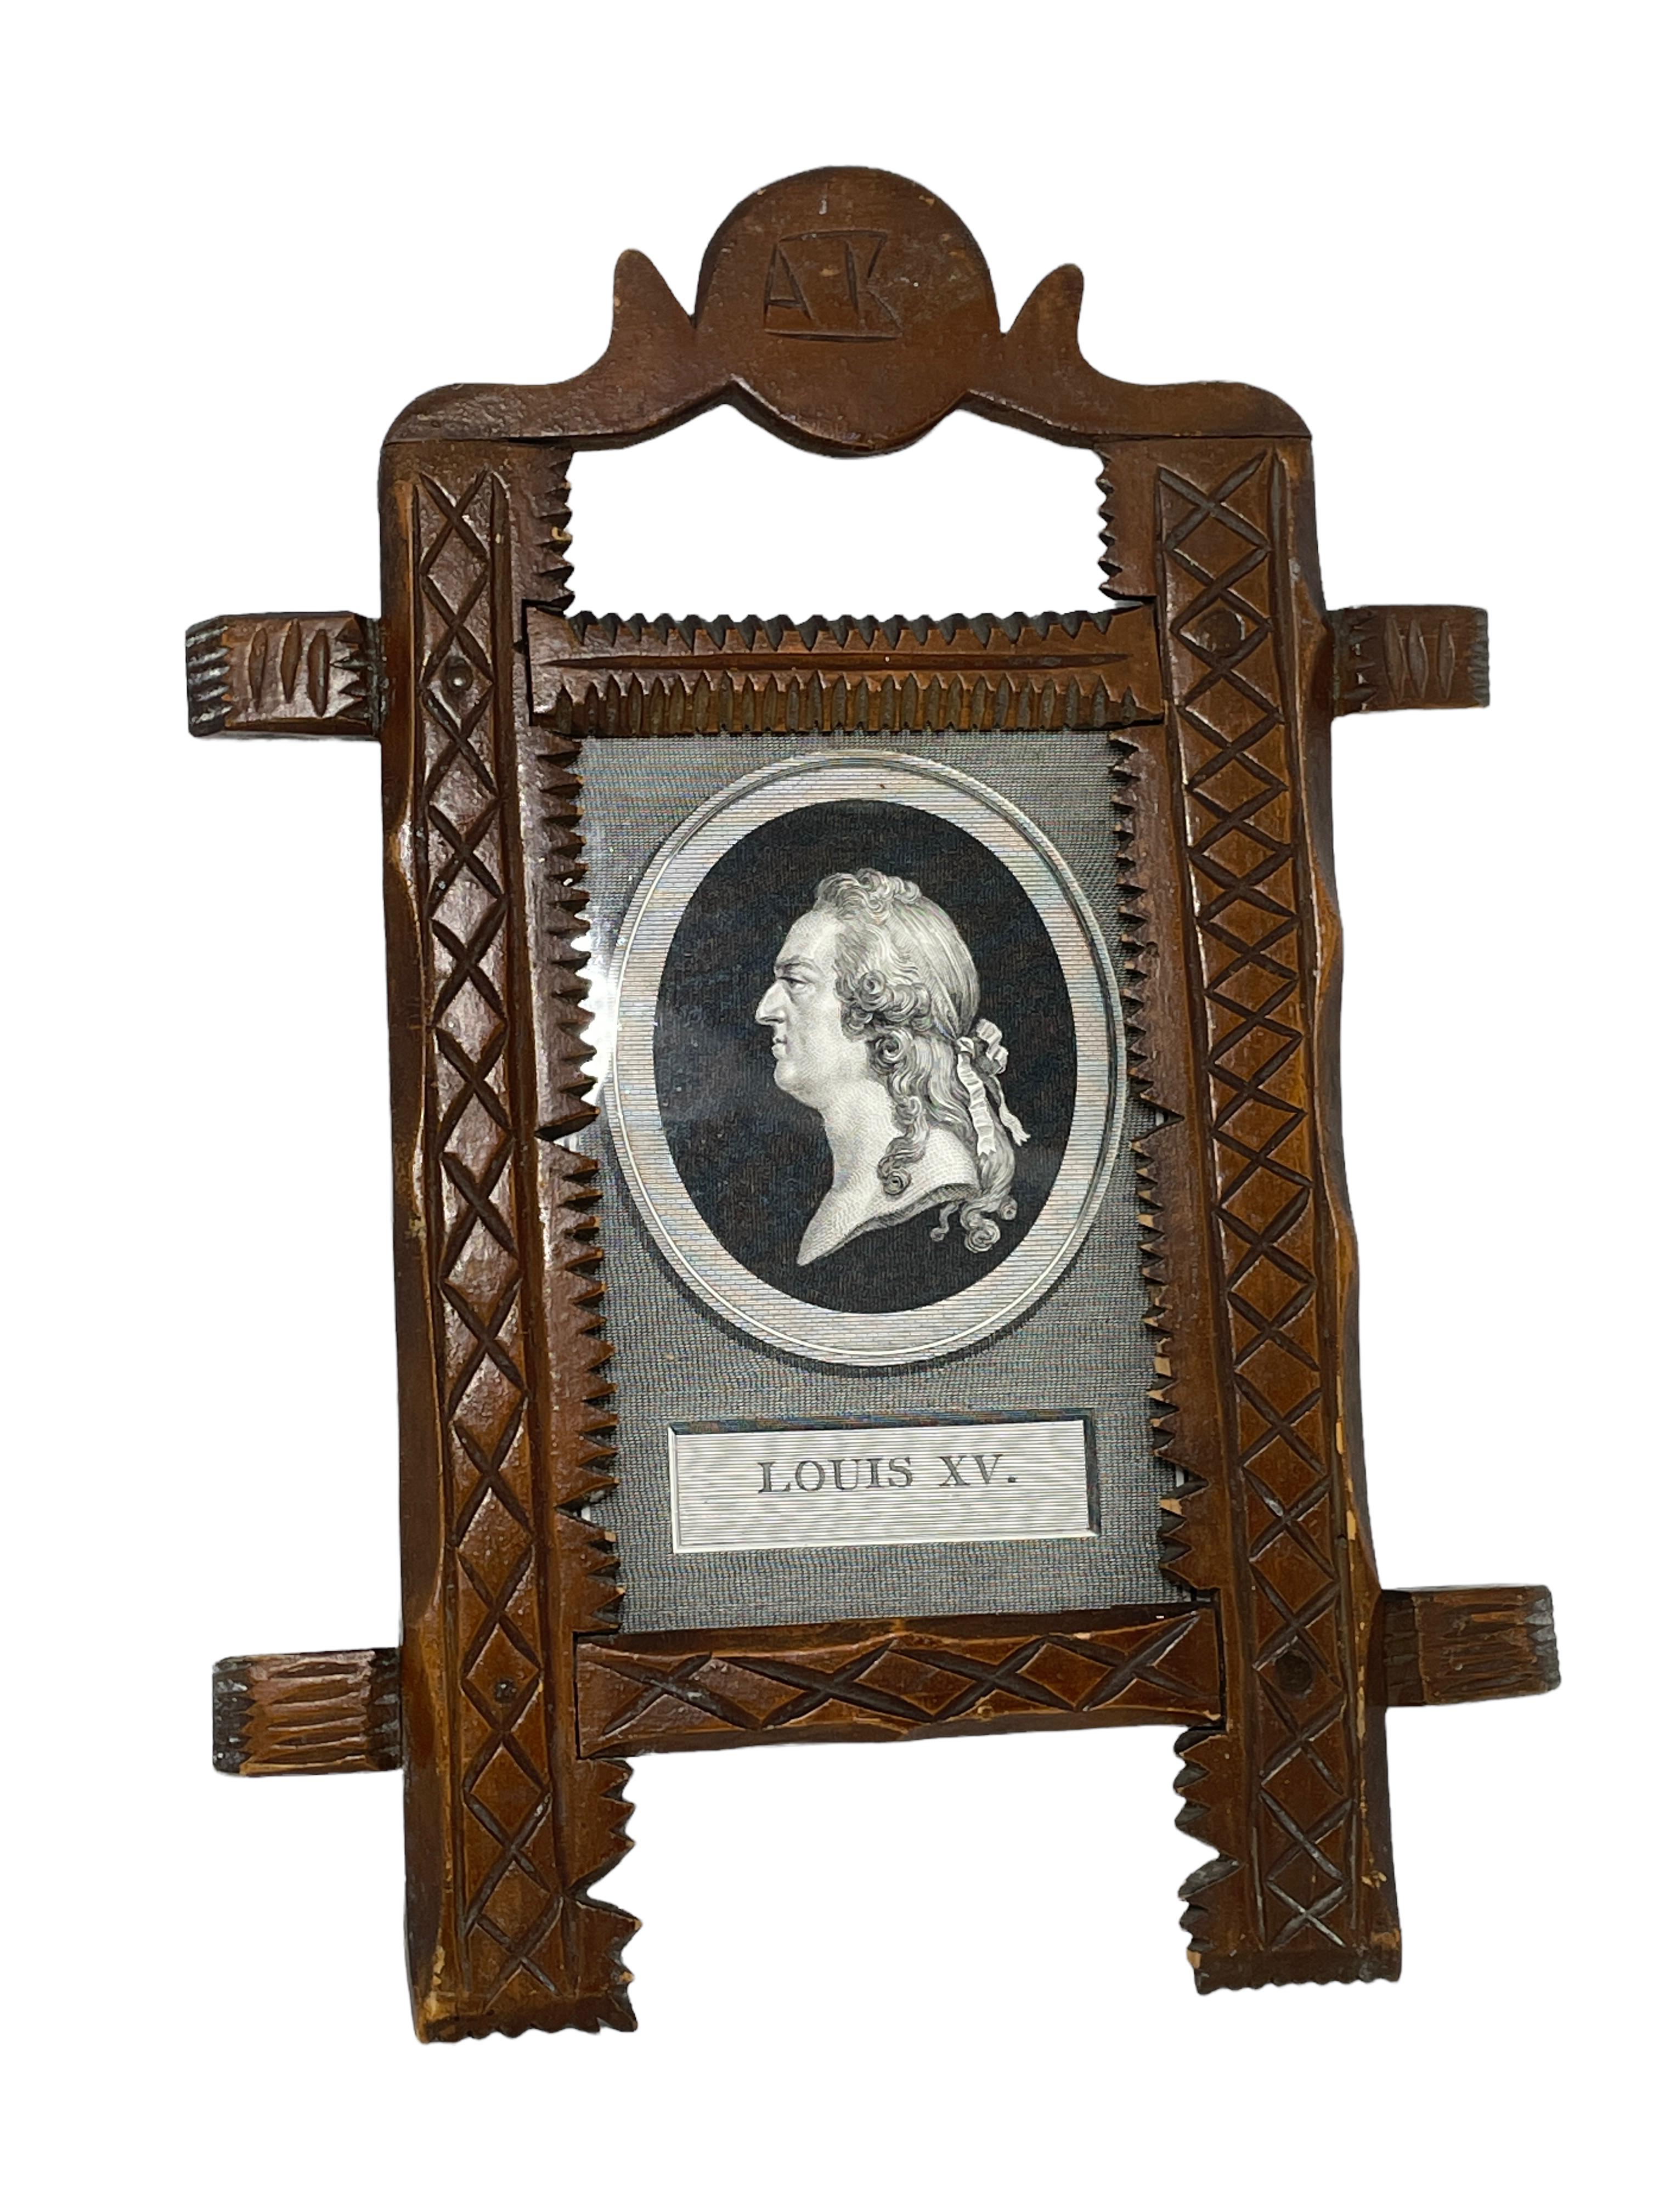 Un joli cadre photo en bois sculpté à la main, fabriqué en Suède, avec une impression du roi Louis XV. de France. Trouvé dans une vente de succession à Stockholm, Suède. Il n'est pas marqué. Un bel ajout à votre collection. Il est en très bon état